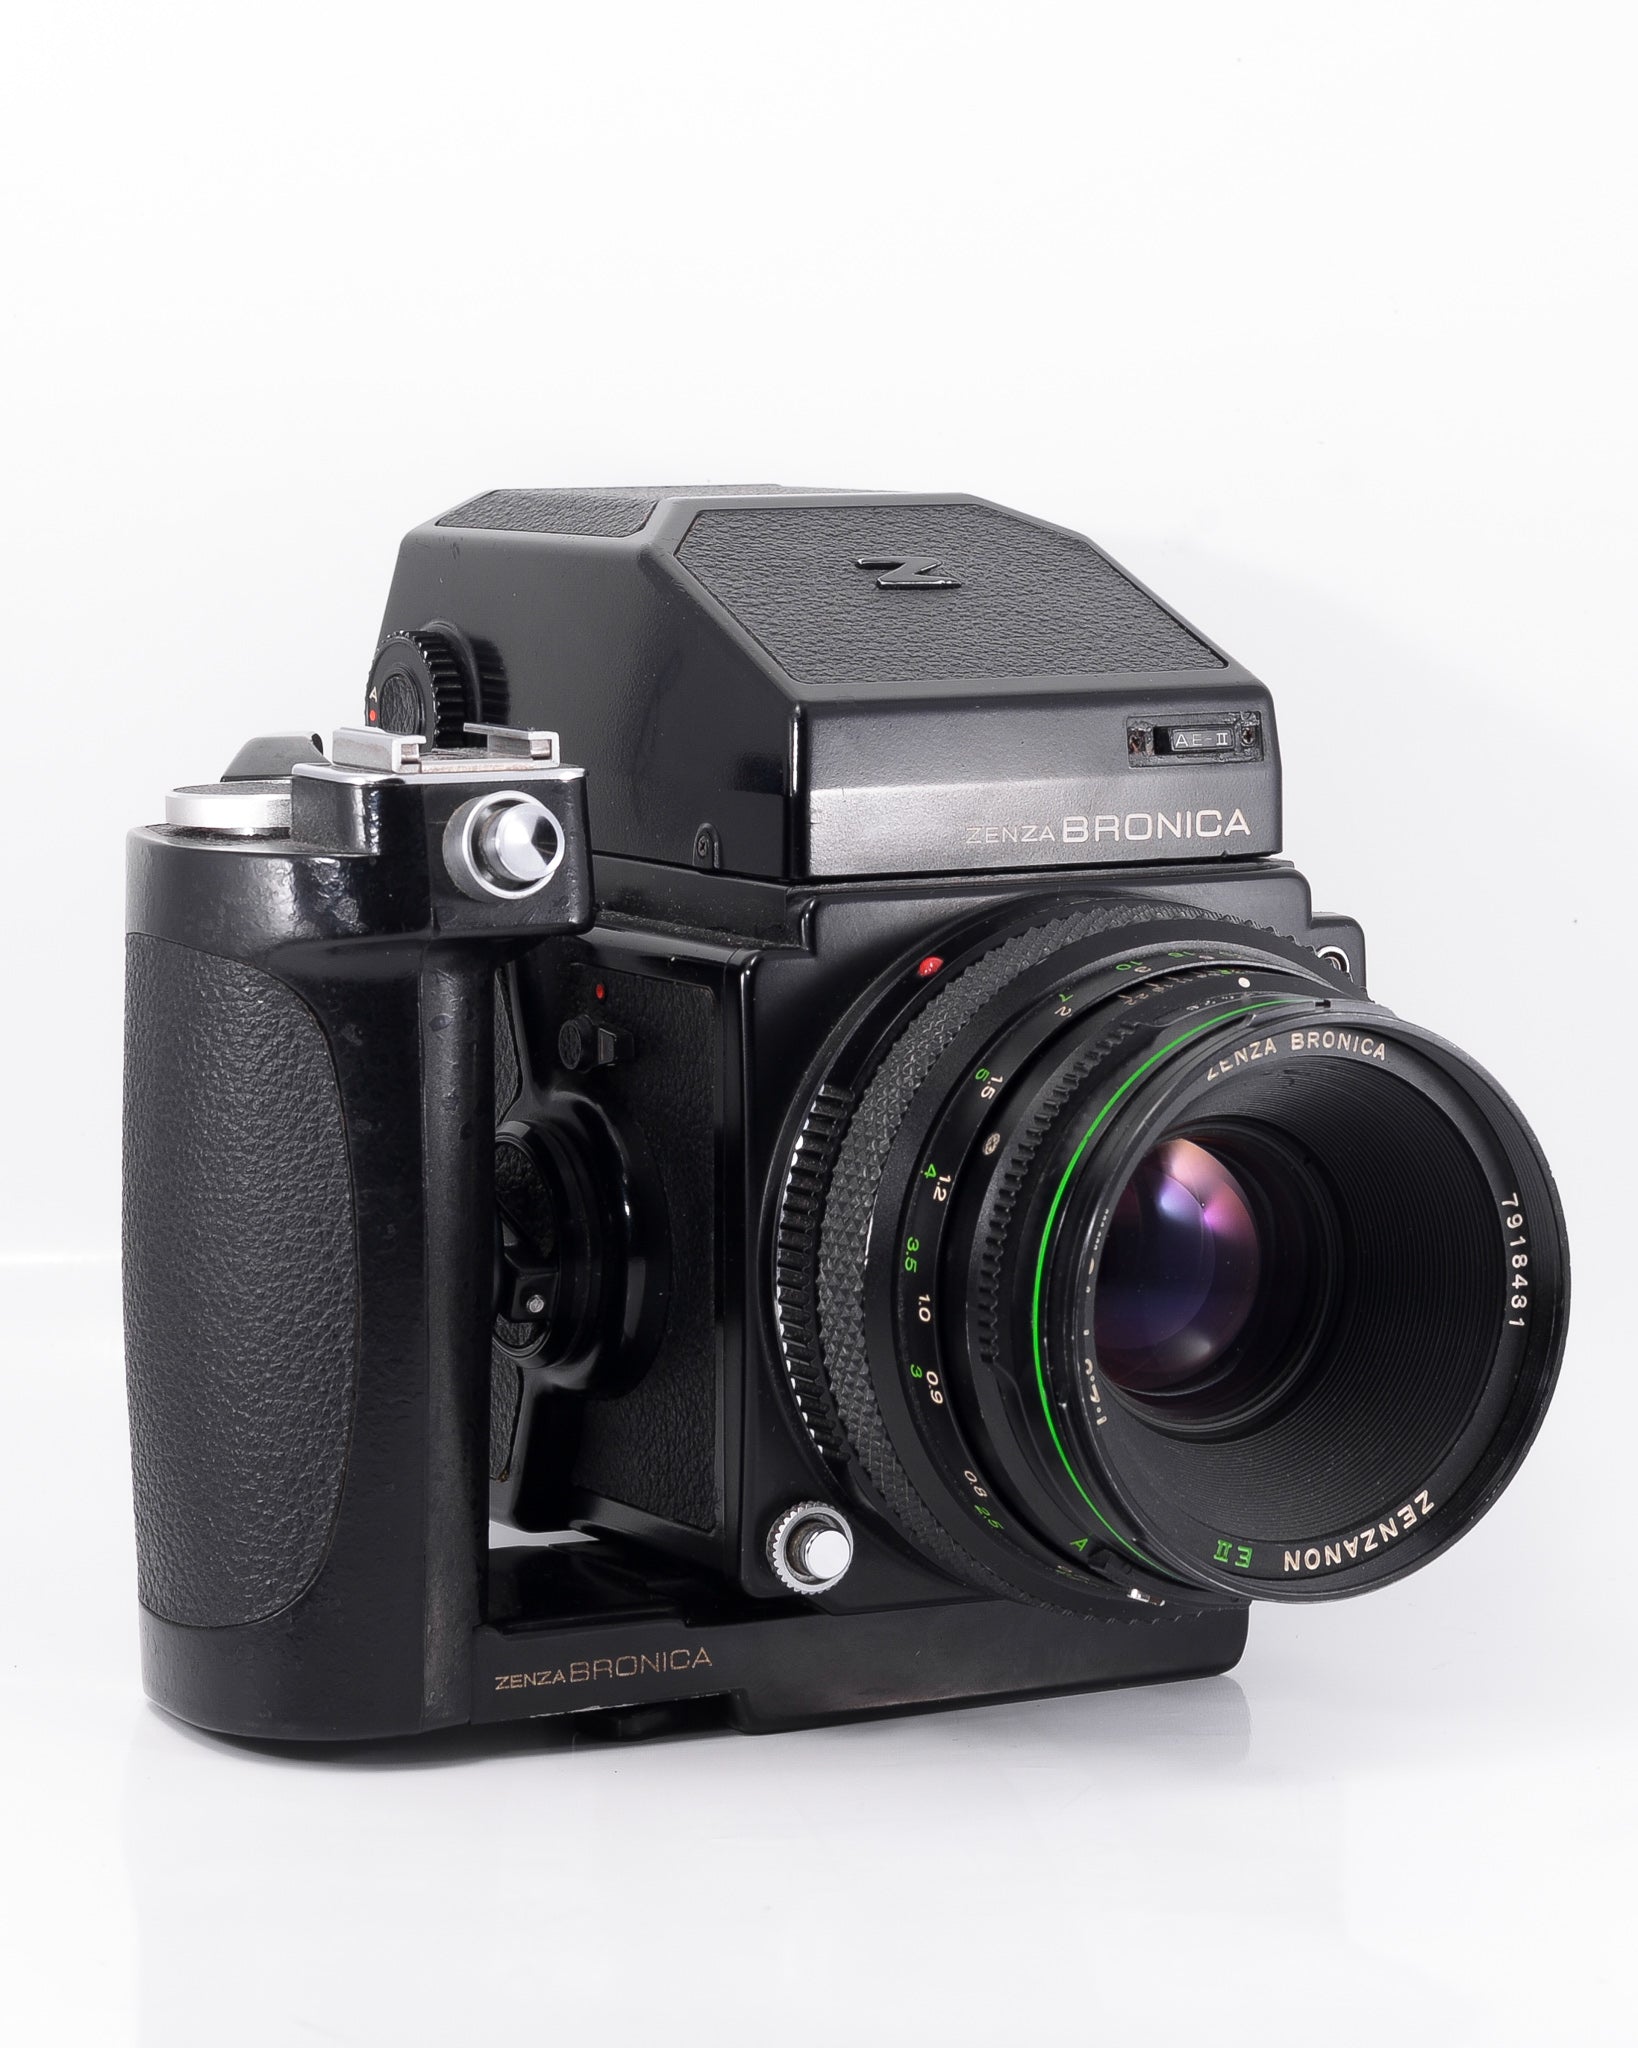 Bronica ETRS Moyen Format KIT appareil photo argentique avec 75mm f2.8 objectif